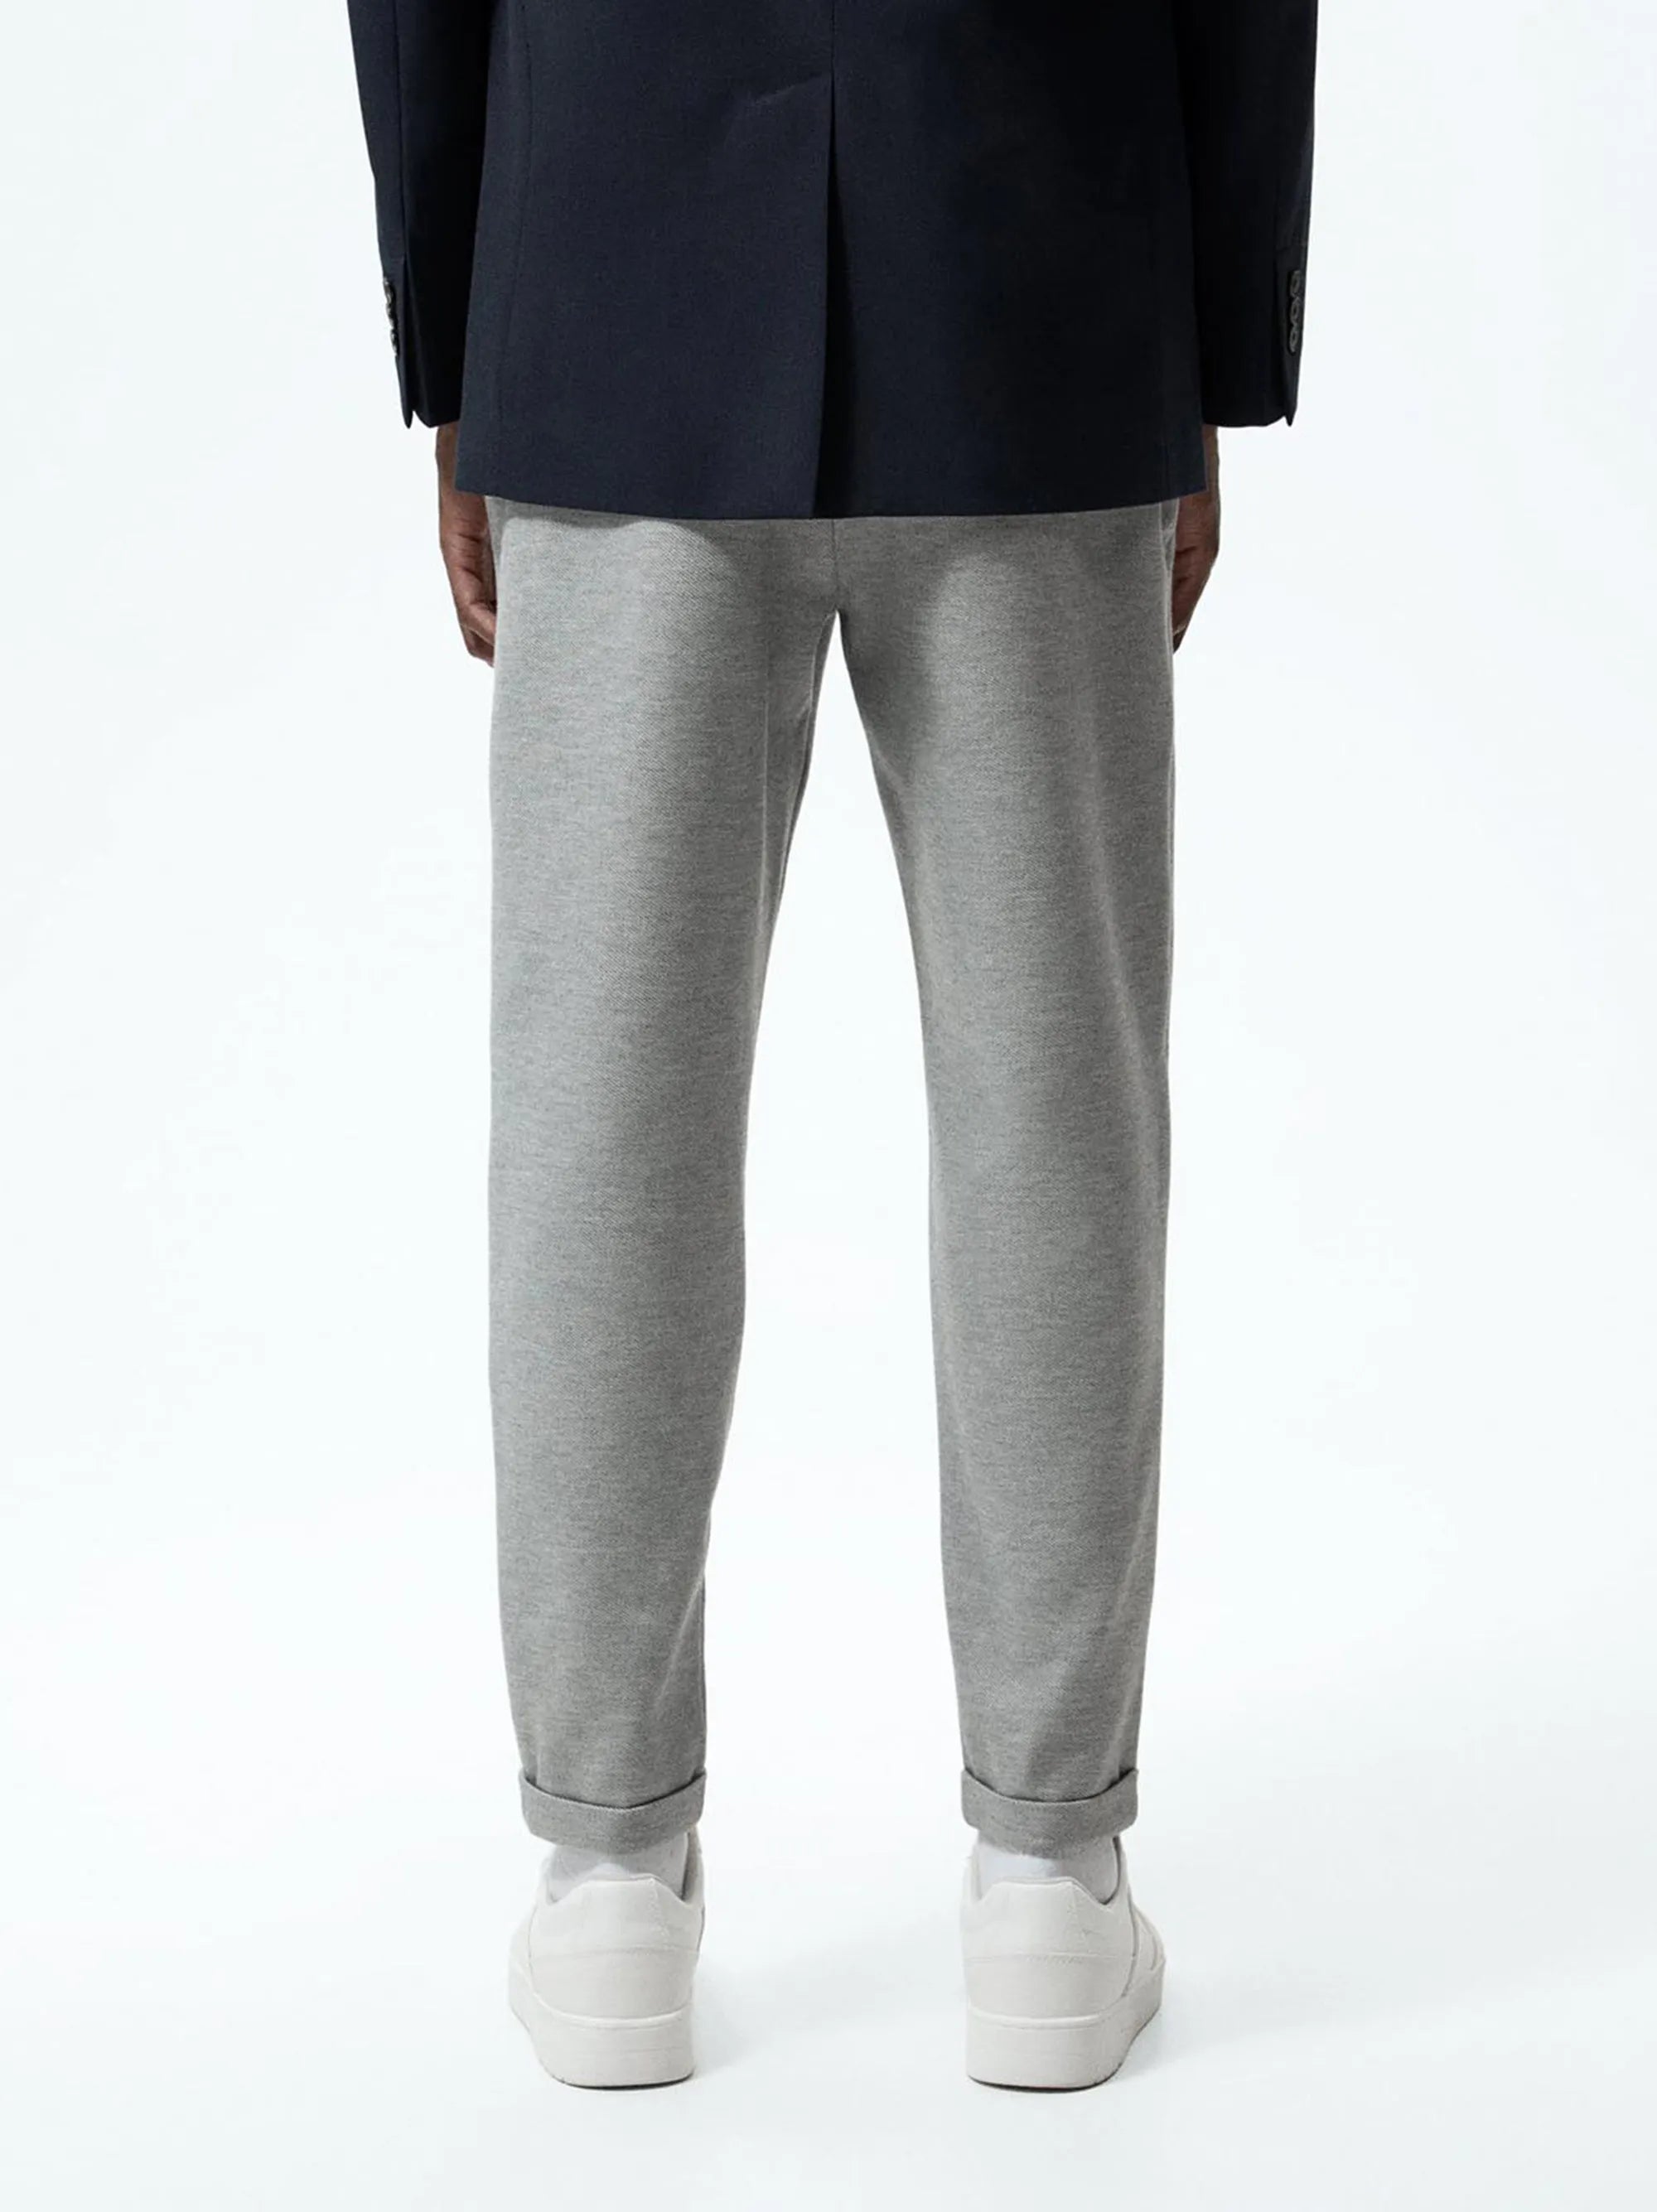 Jogger Waistband Grey Trouser For Men